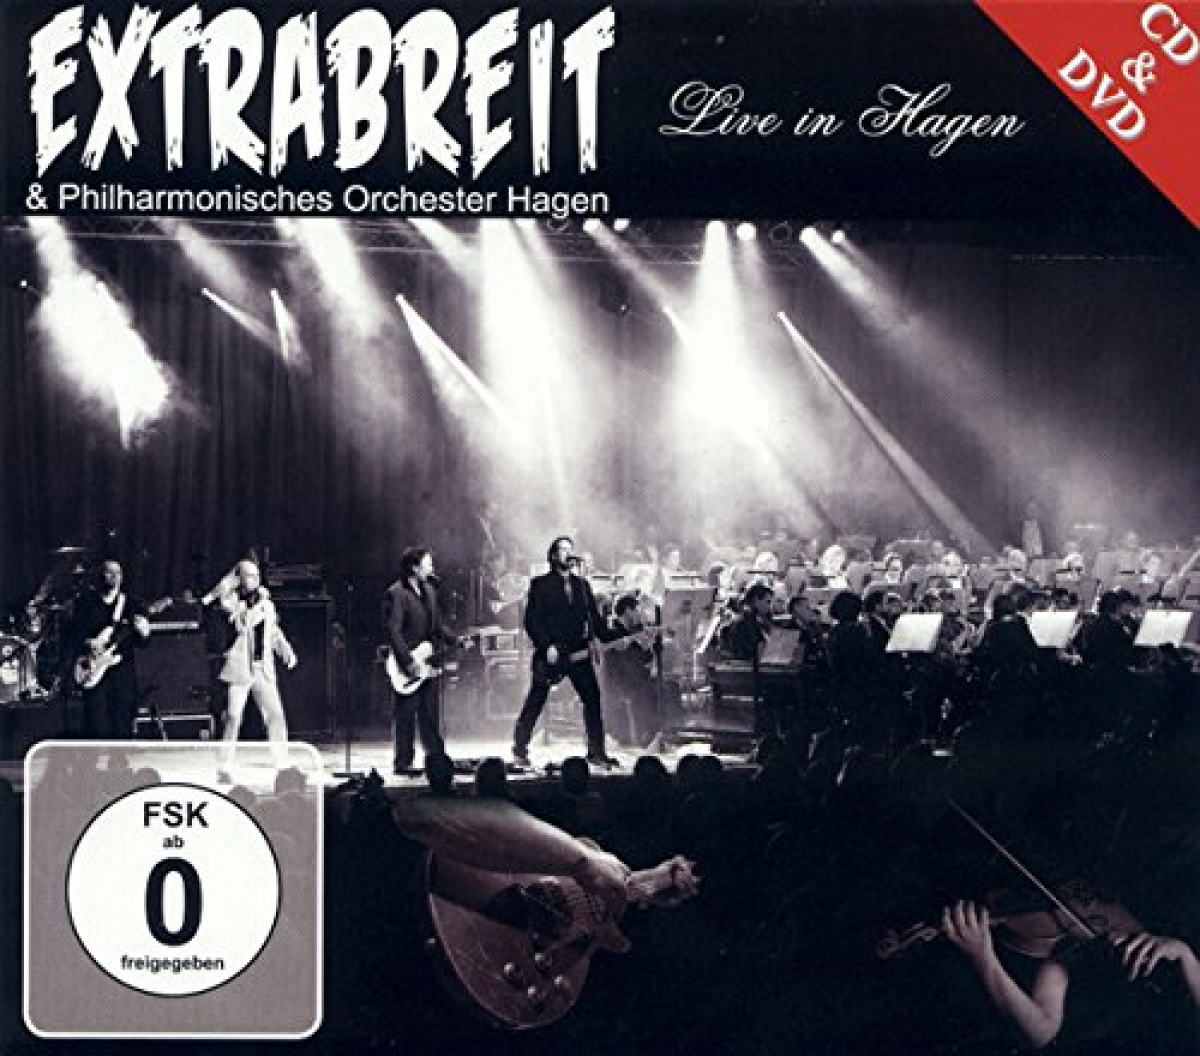 Extrabreit &.Philharmonisches Orchester Hagen – Live in Hagen CD&DVD